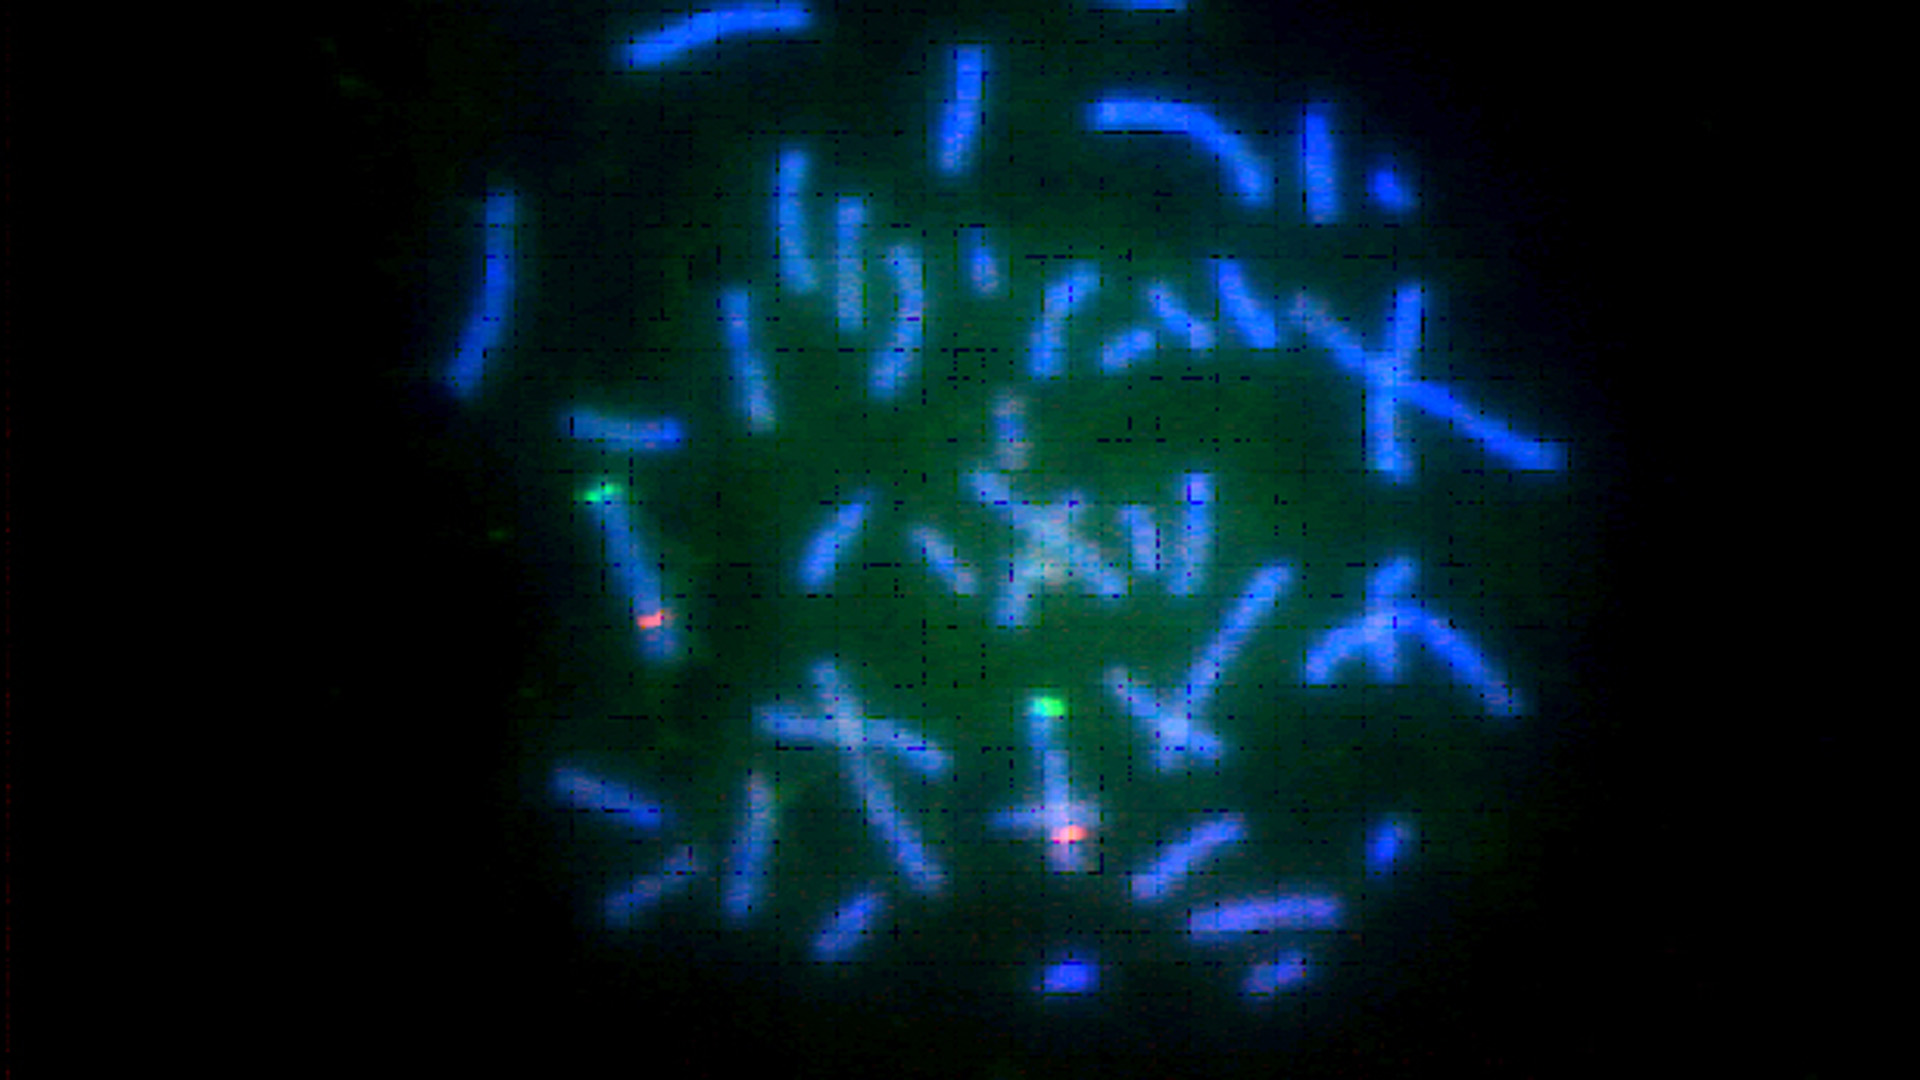 Chromosomen sind die Bestandteile einer Zelle, auf denen die DNA, das Erbgut, liegt. Sie lassen sich mit chemischen Reaktionen farblich markieren – hier leuchtet das Chromosomenpaar Nr. 5 grün und rot. Der Mensch hat 46 Chromosomen, davon zwei, die das Geschlecht bestimmen.